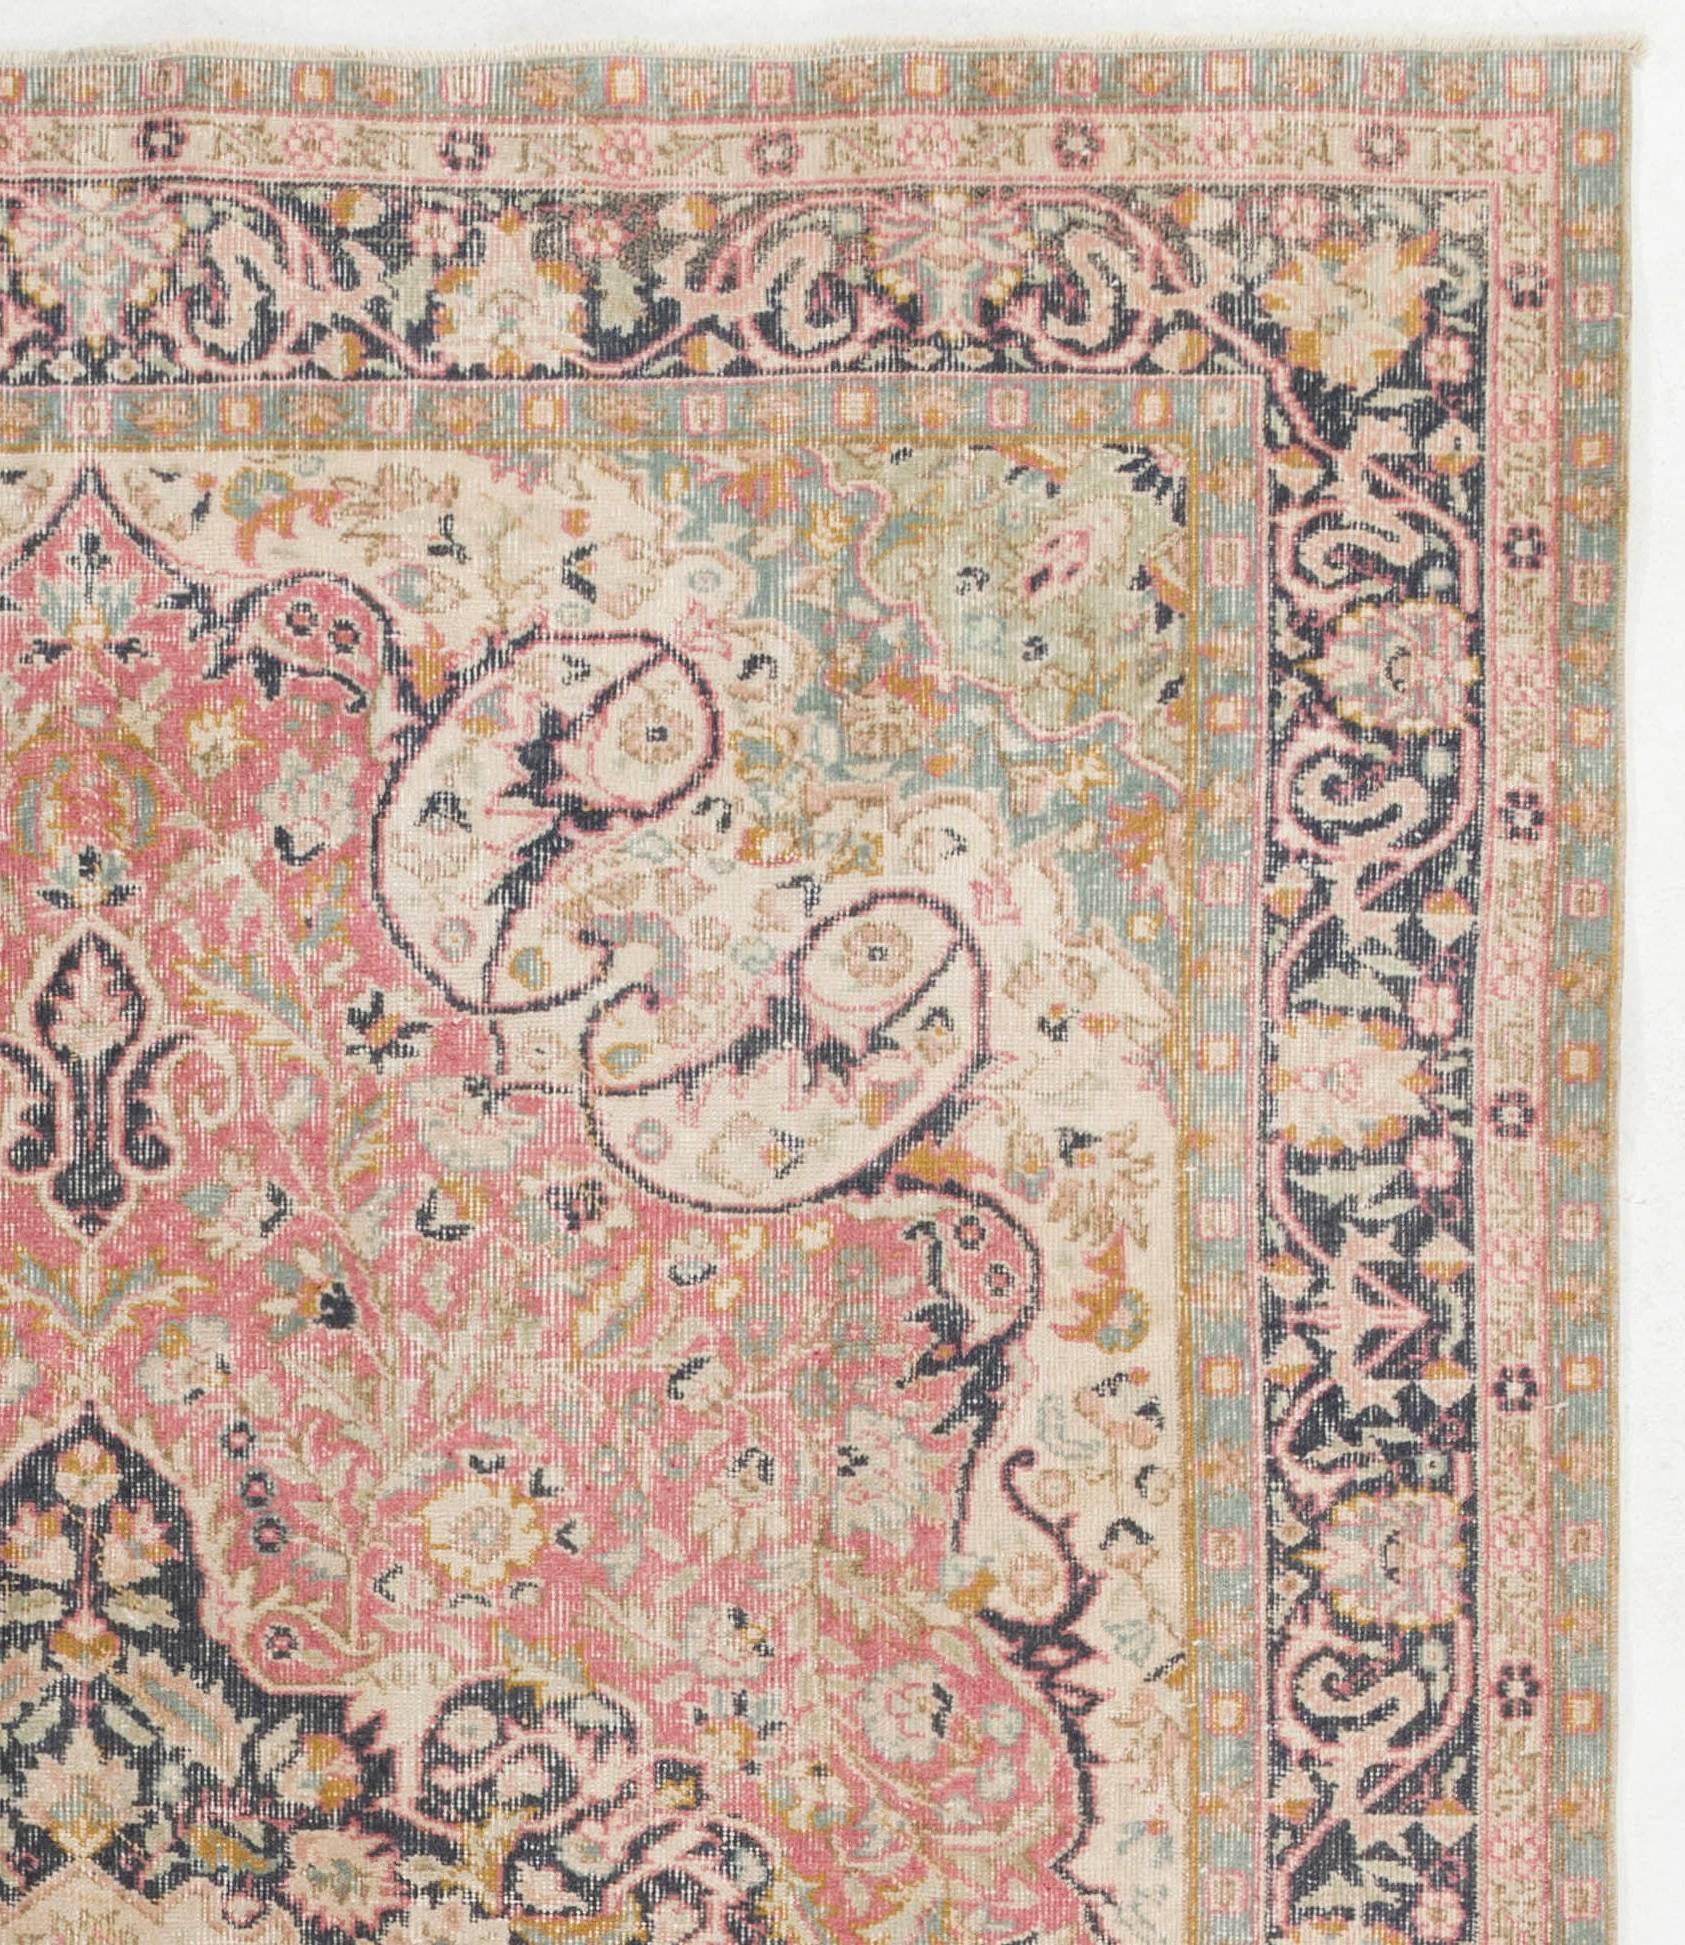 Ein handgefertigter türkischer Vintage-Teppich mit klassischem Medaillon-Muster in einer schönen Farbpalette aus Korallenrosa, Mintgrün, Beige und Schwarz. Fein handgeknüpft mit Wollflor auf Baumwollgrund. In sehr gutem Zustand. Robust und so sauber